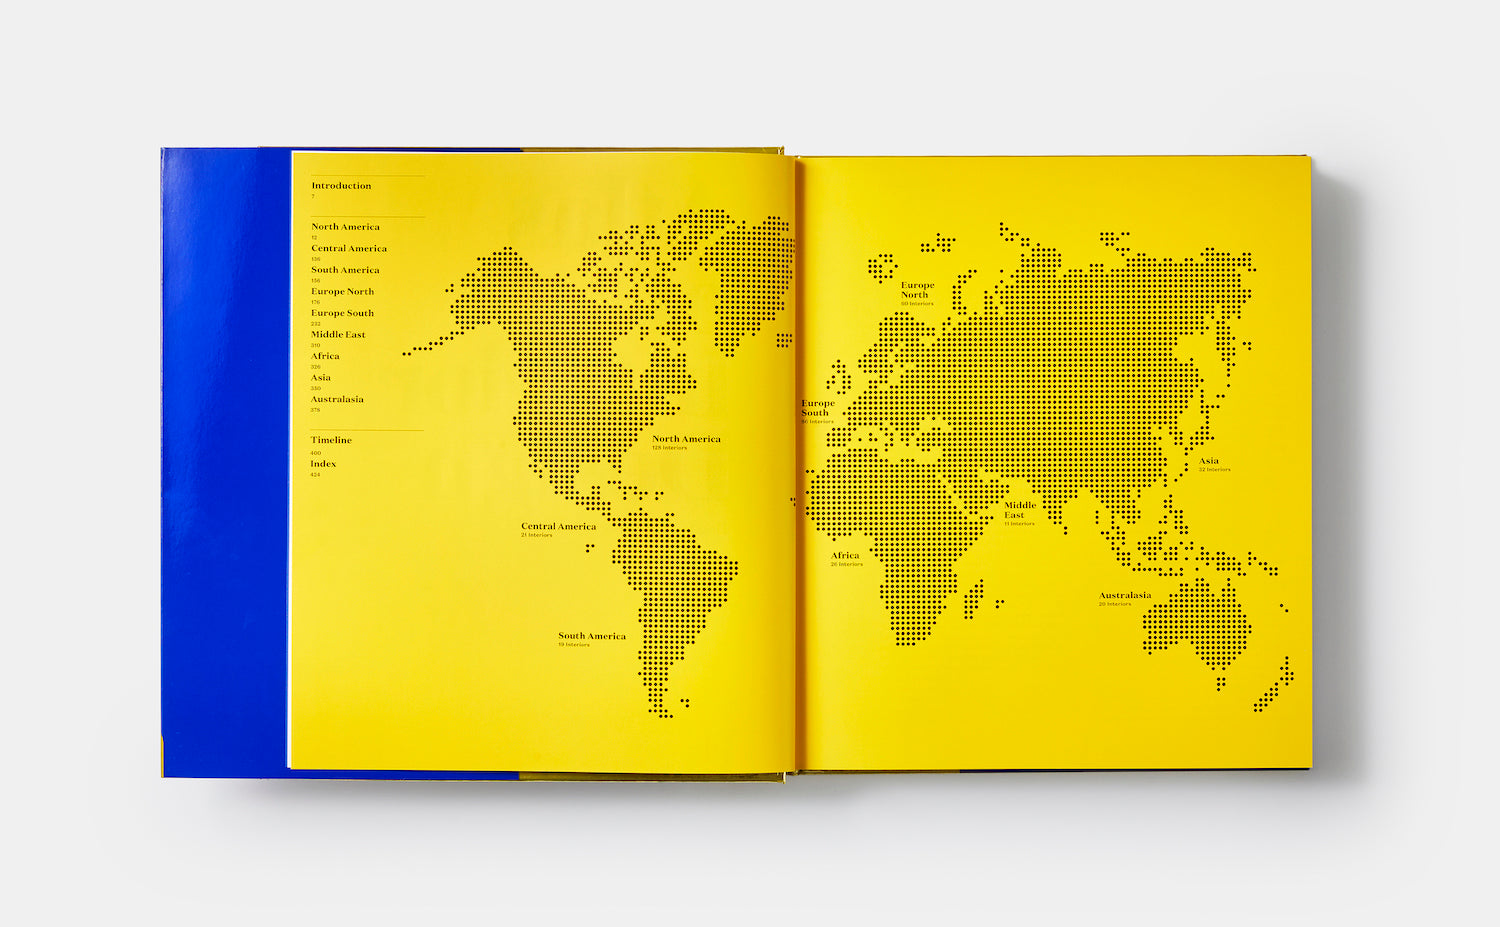 Atlas of Interior Design